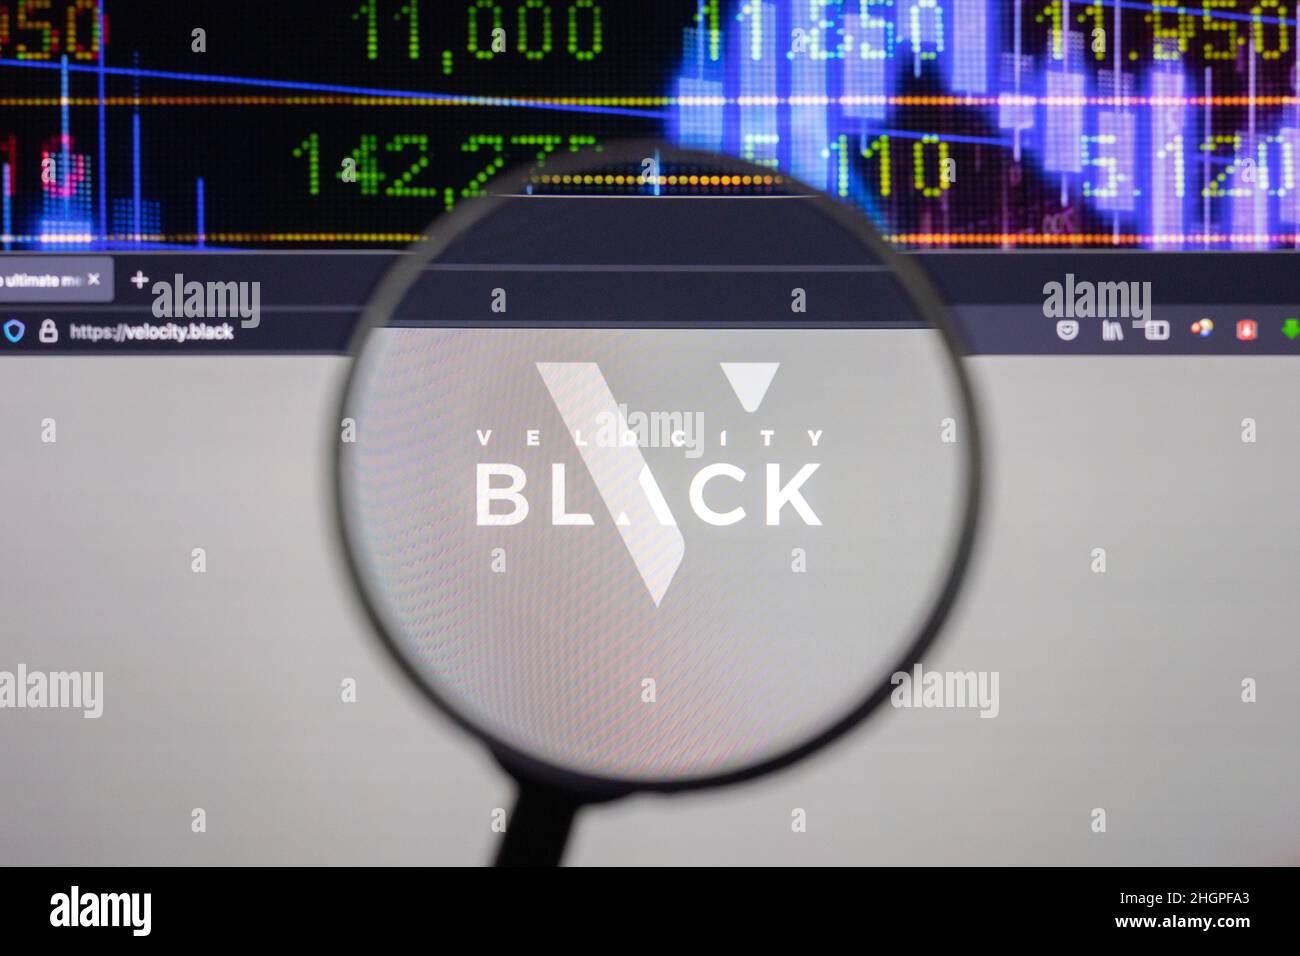 Velocity Black Company logo su un sito web con blurry di mercato azionario sviluppi in background, visto su uno schermo di computer attraverso una lente d'ingrandimento Foto Stock